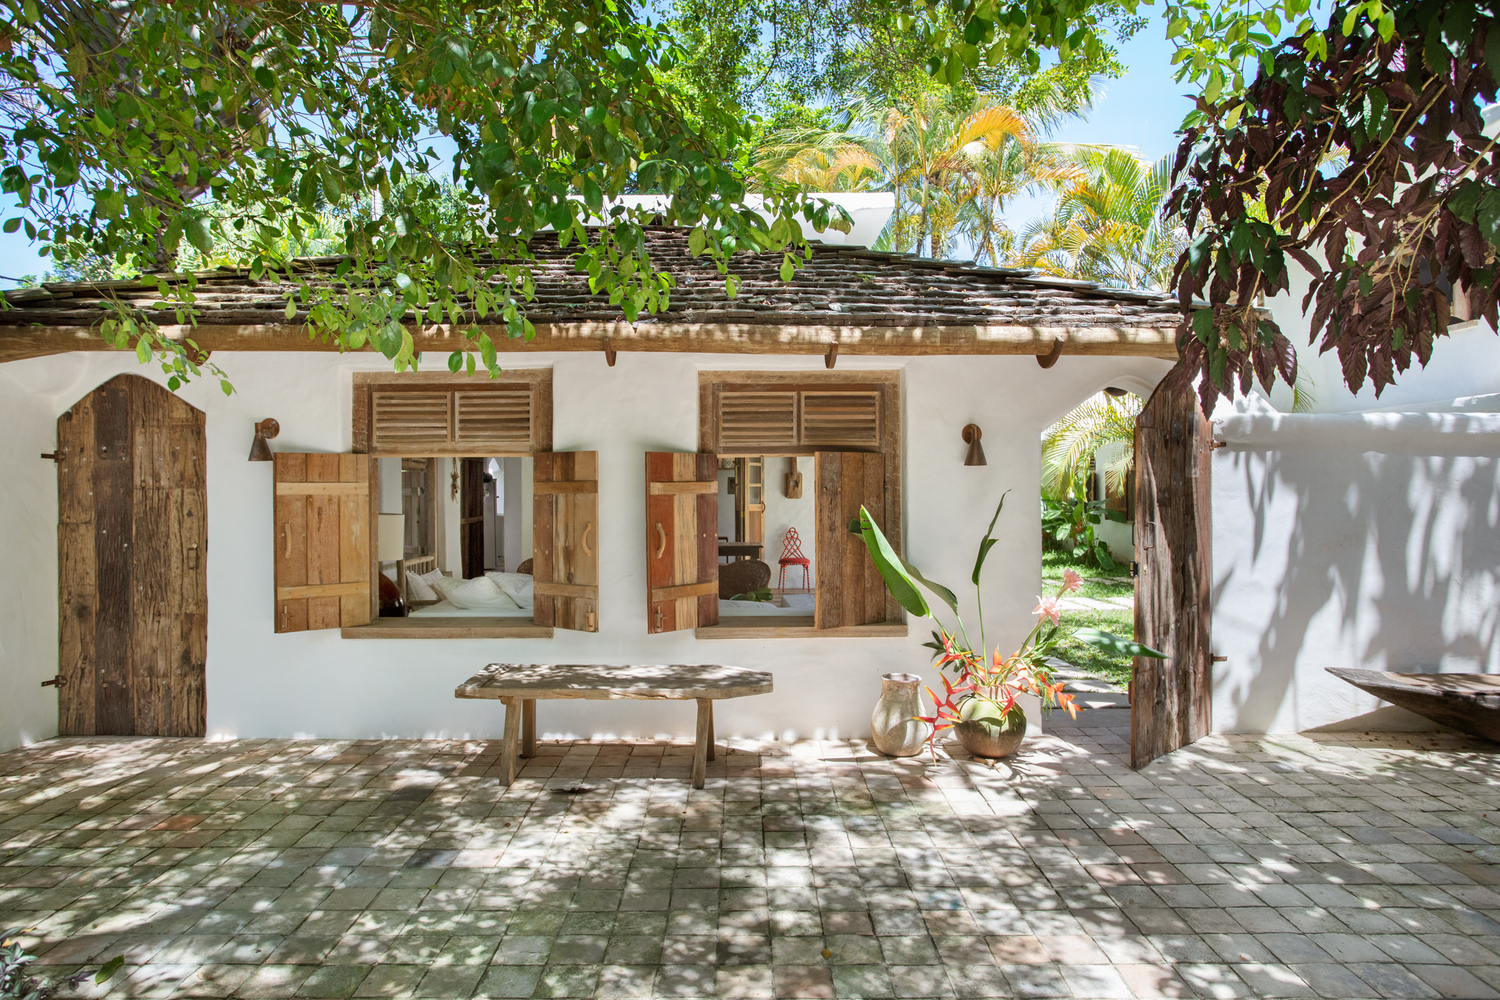 Trancoso House, ngôi nhà xây dựng với mục đích cho thuê nghỉ dưỡng có diện tích 330m² tại Trancoso, Bahia, thuộc khu vực Đông Bắc của đất nước Brazil.